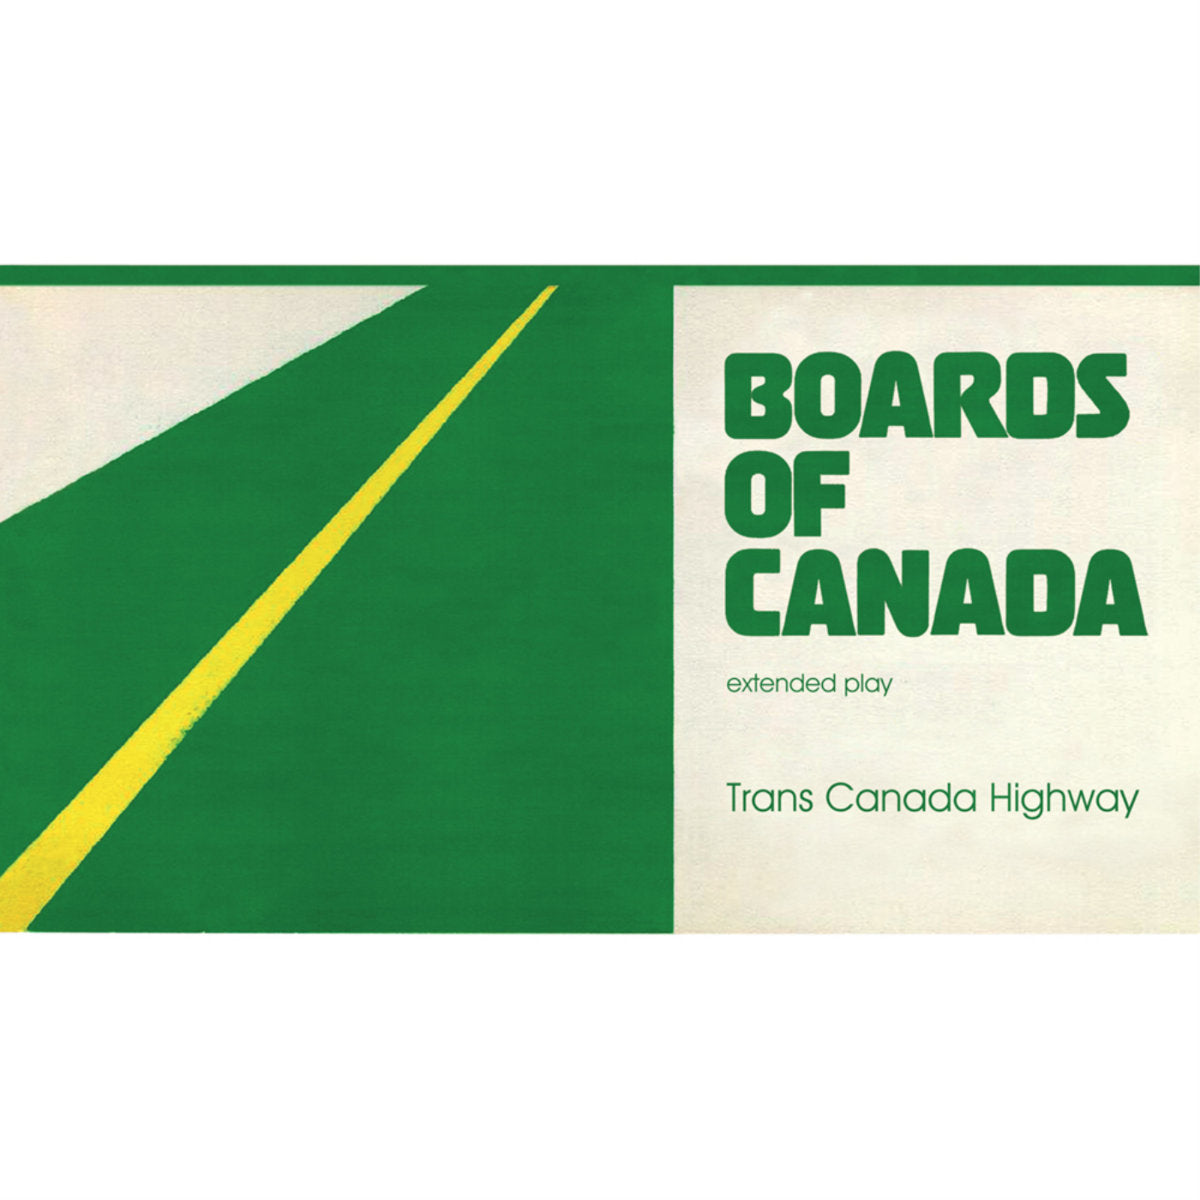 Boards of Canada "Trans Canada Highway"